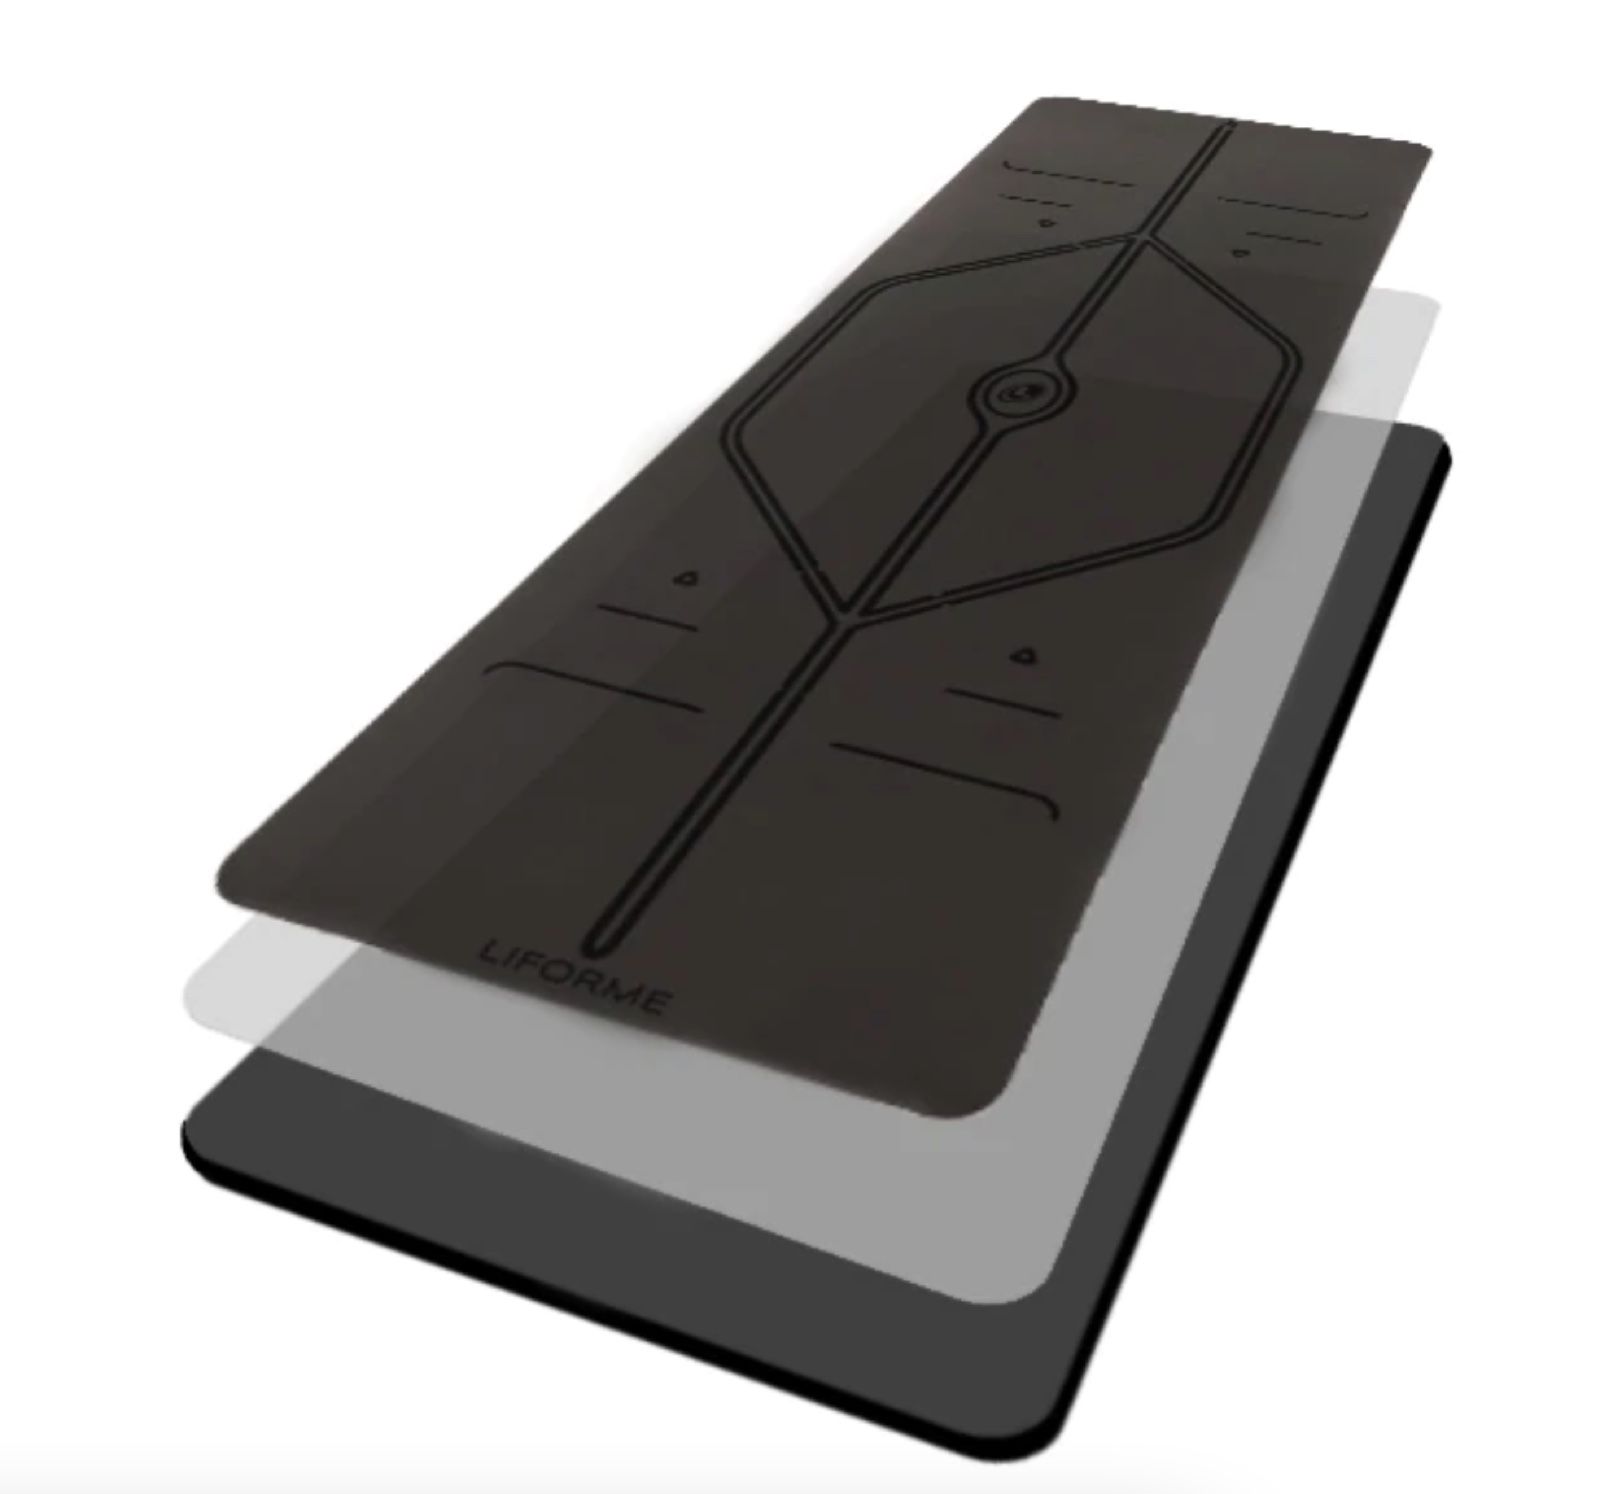 Tăng cường kích thước] Liforme Yoga Mat XL Black - Độ dày  - Chất liệu  cao su siêu bám - Đường định tuyến độc đáo 